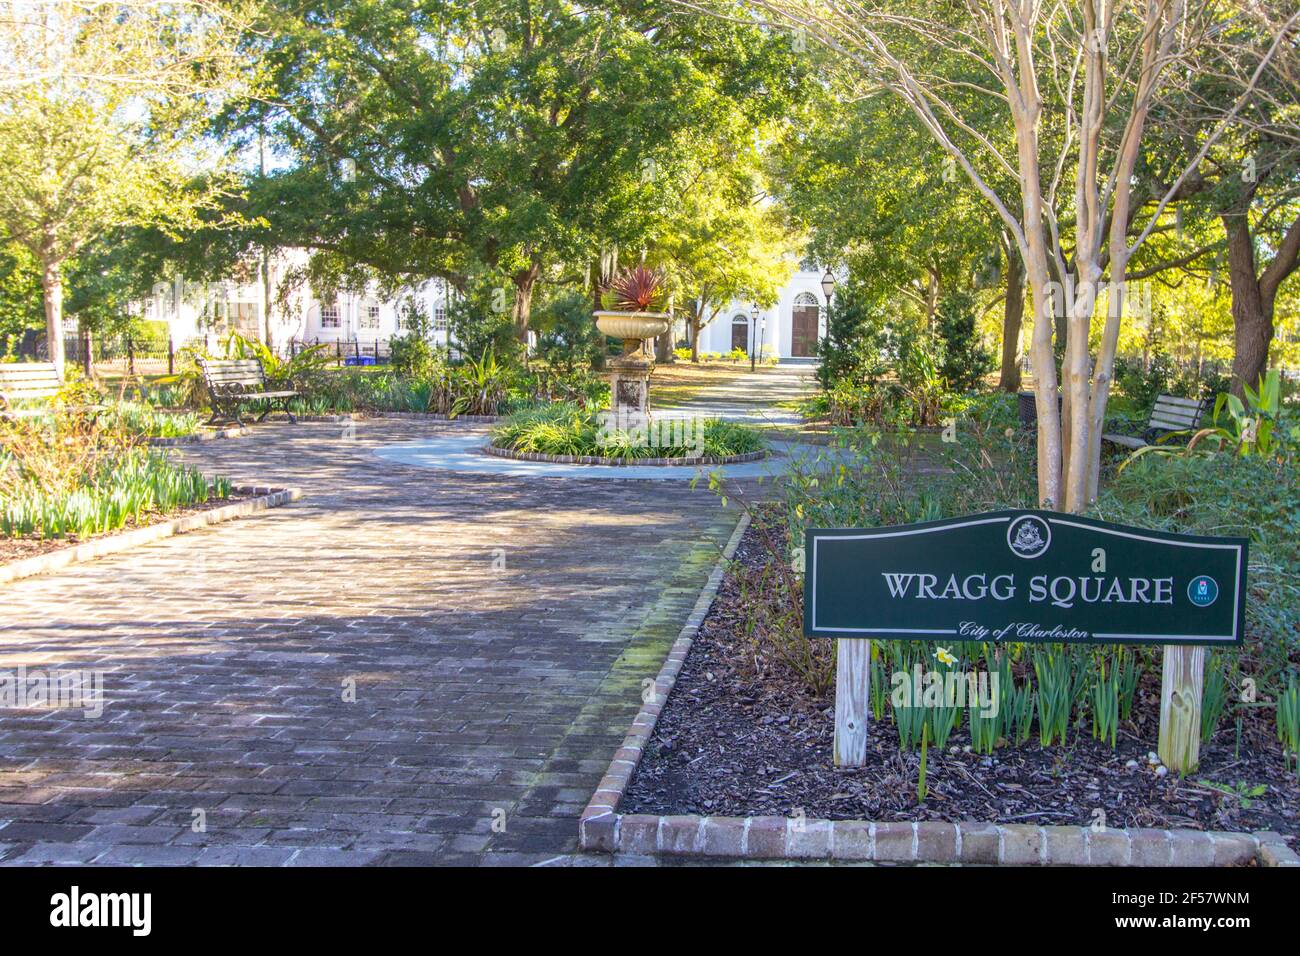 Charleston, Carolina del Sur, Estados Unidos - Entrada al parque Wragg Square Park en el centro histórico de Charleston, Carolina del Sur Foto de stock